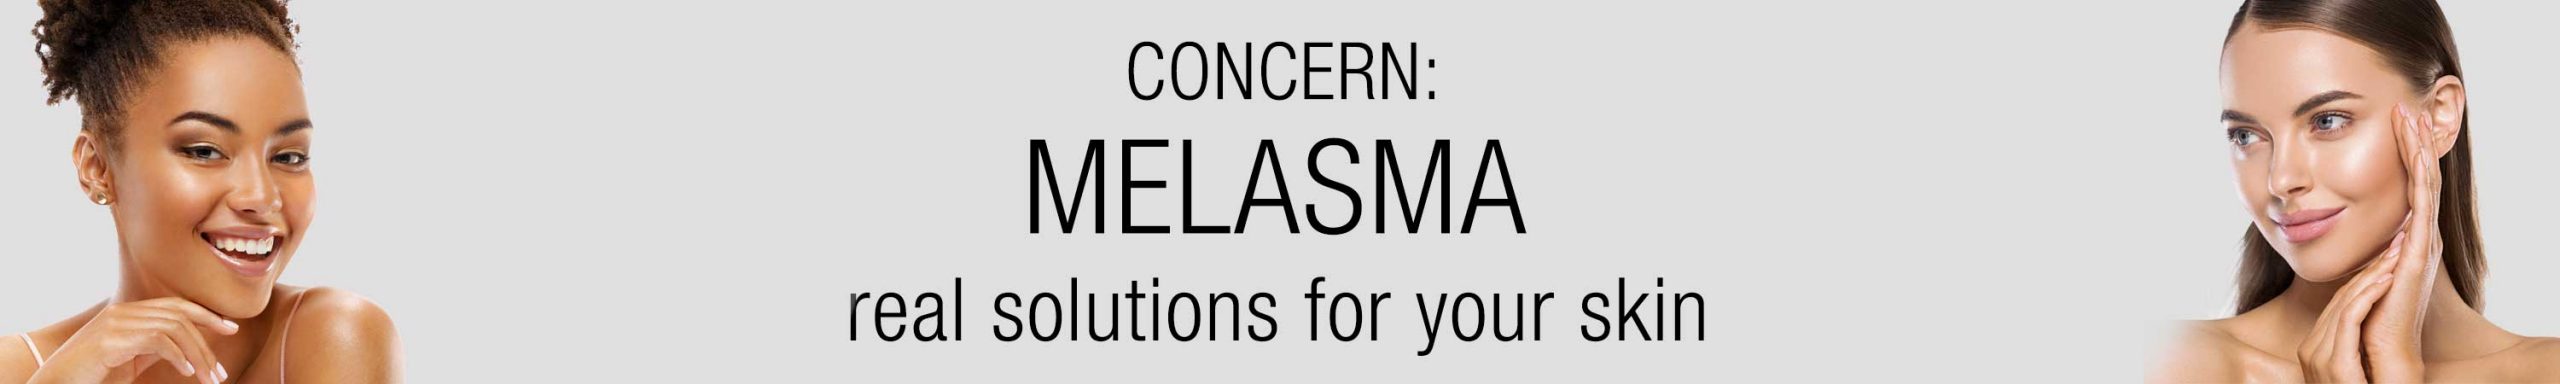 melasma-banner-v2